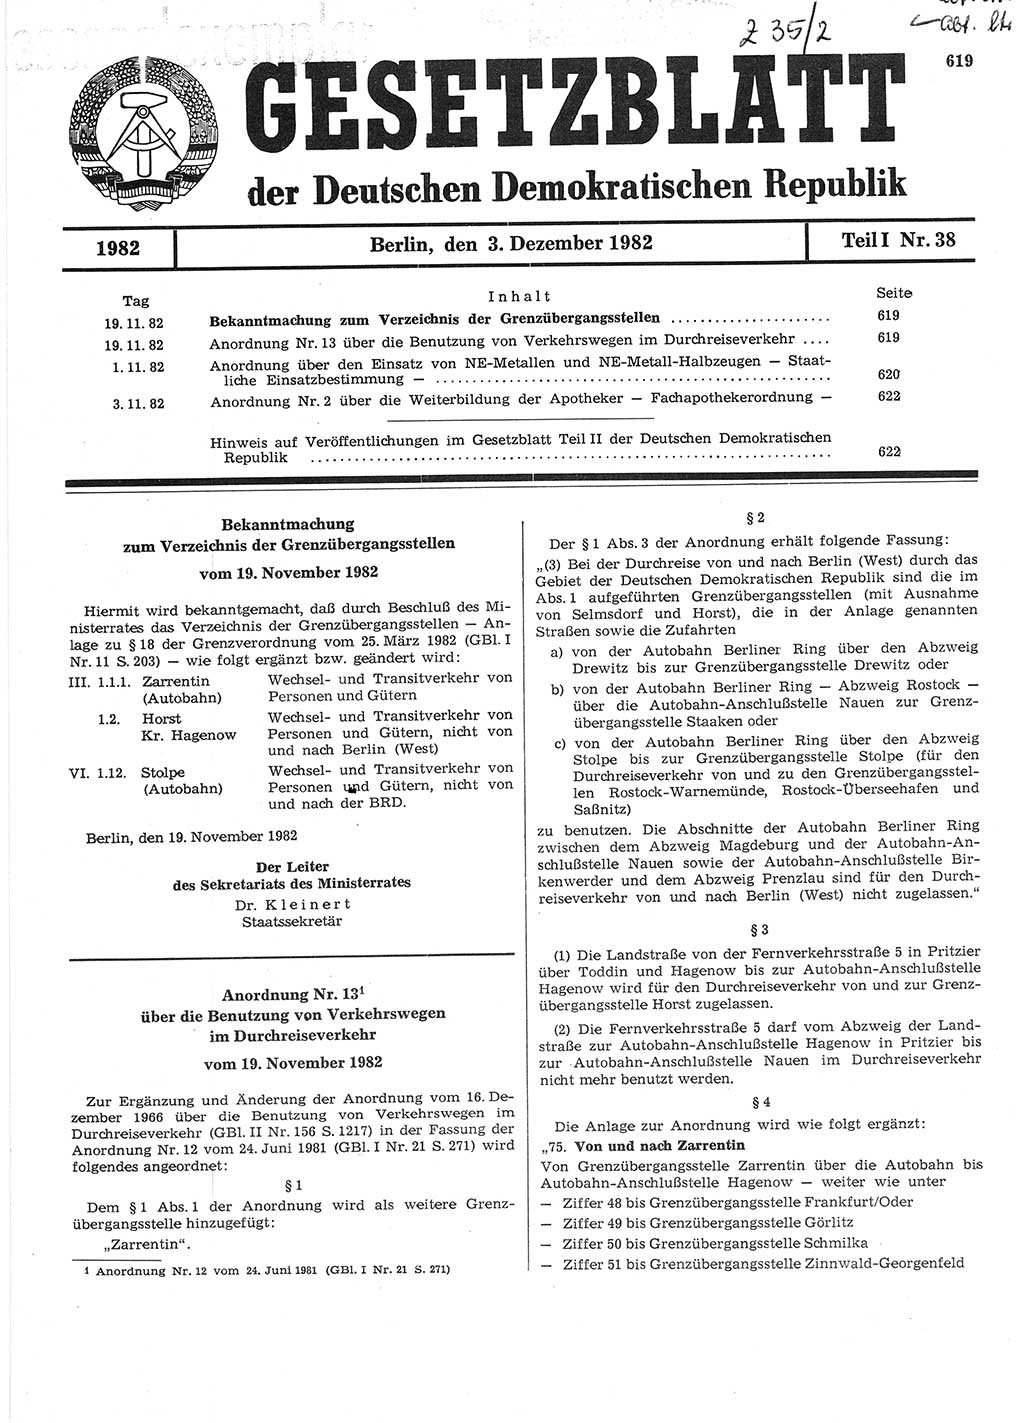 Gesetzblatt (GBl.) der Deutschen Demokratischen Republik (DDR) Teil Ⅰ 1982, Seite 619 (GBl. DDR Ⅰ 1982, S. 619)